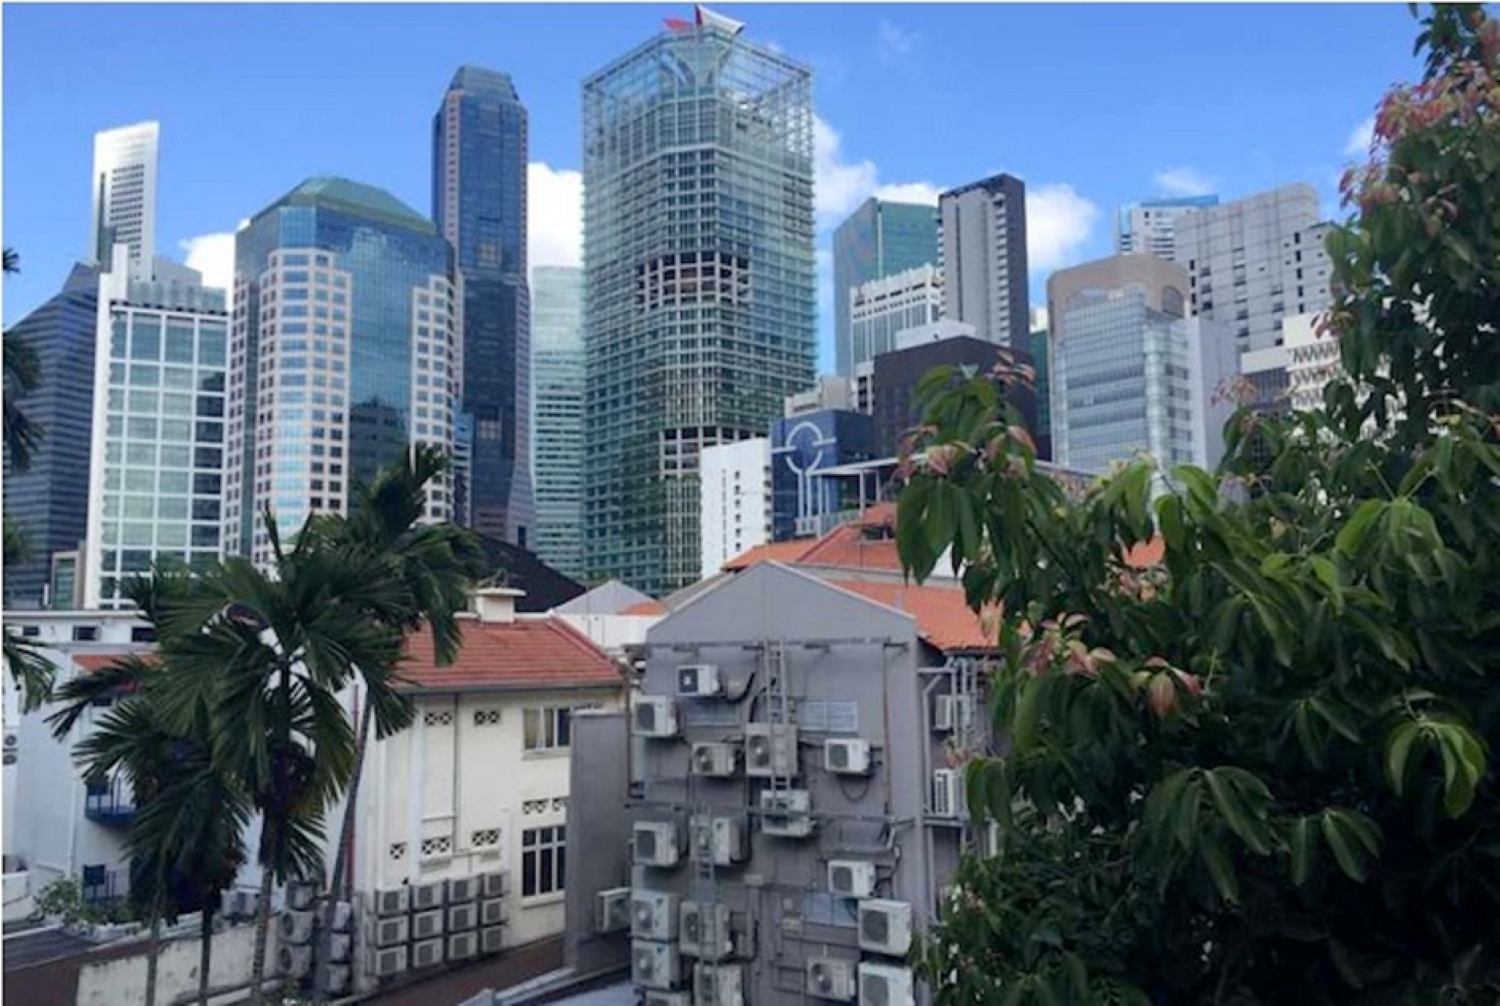 Vergr?sserte Ansicht: ETH Zurich: Singapore Month